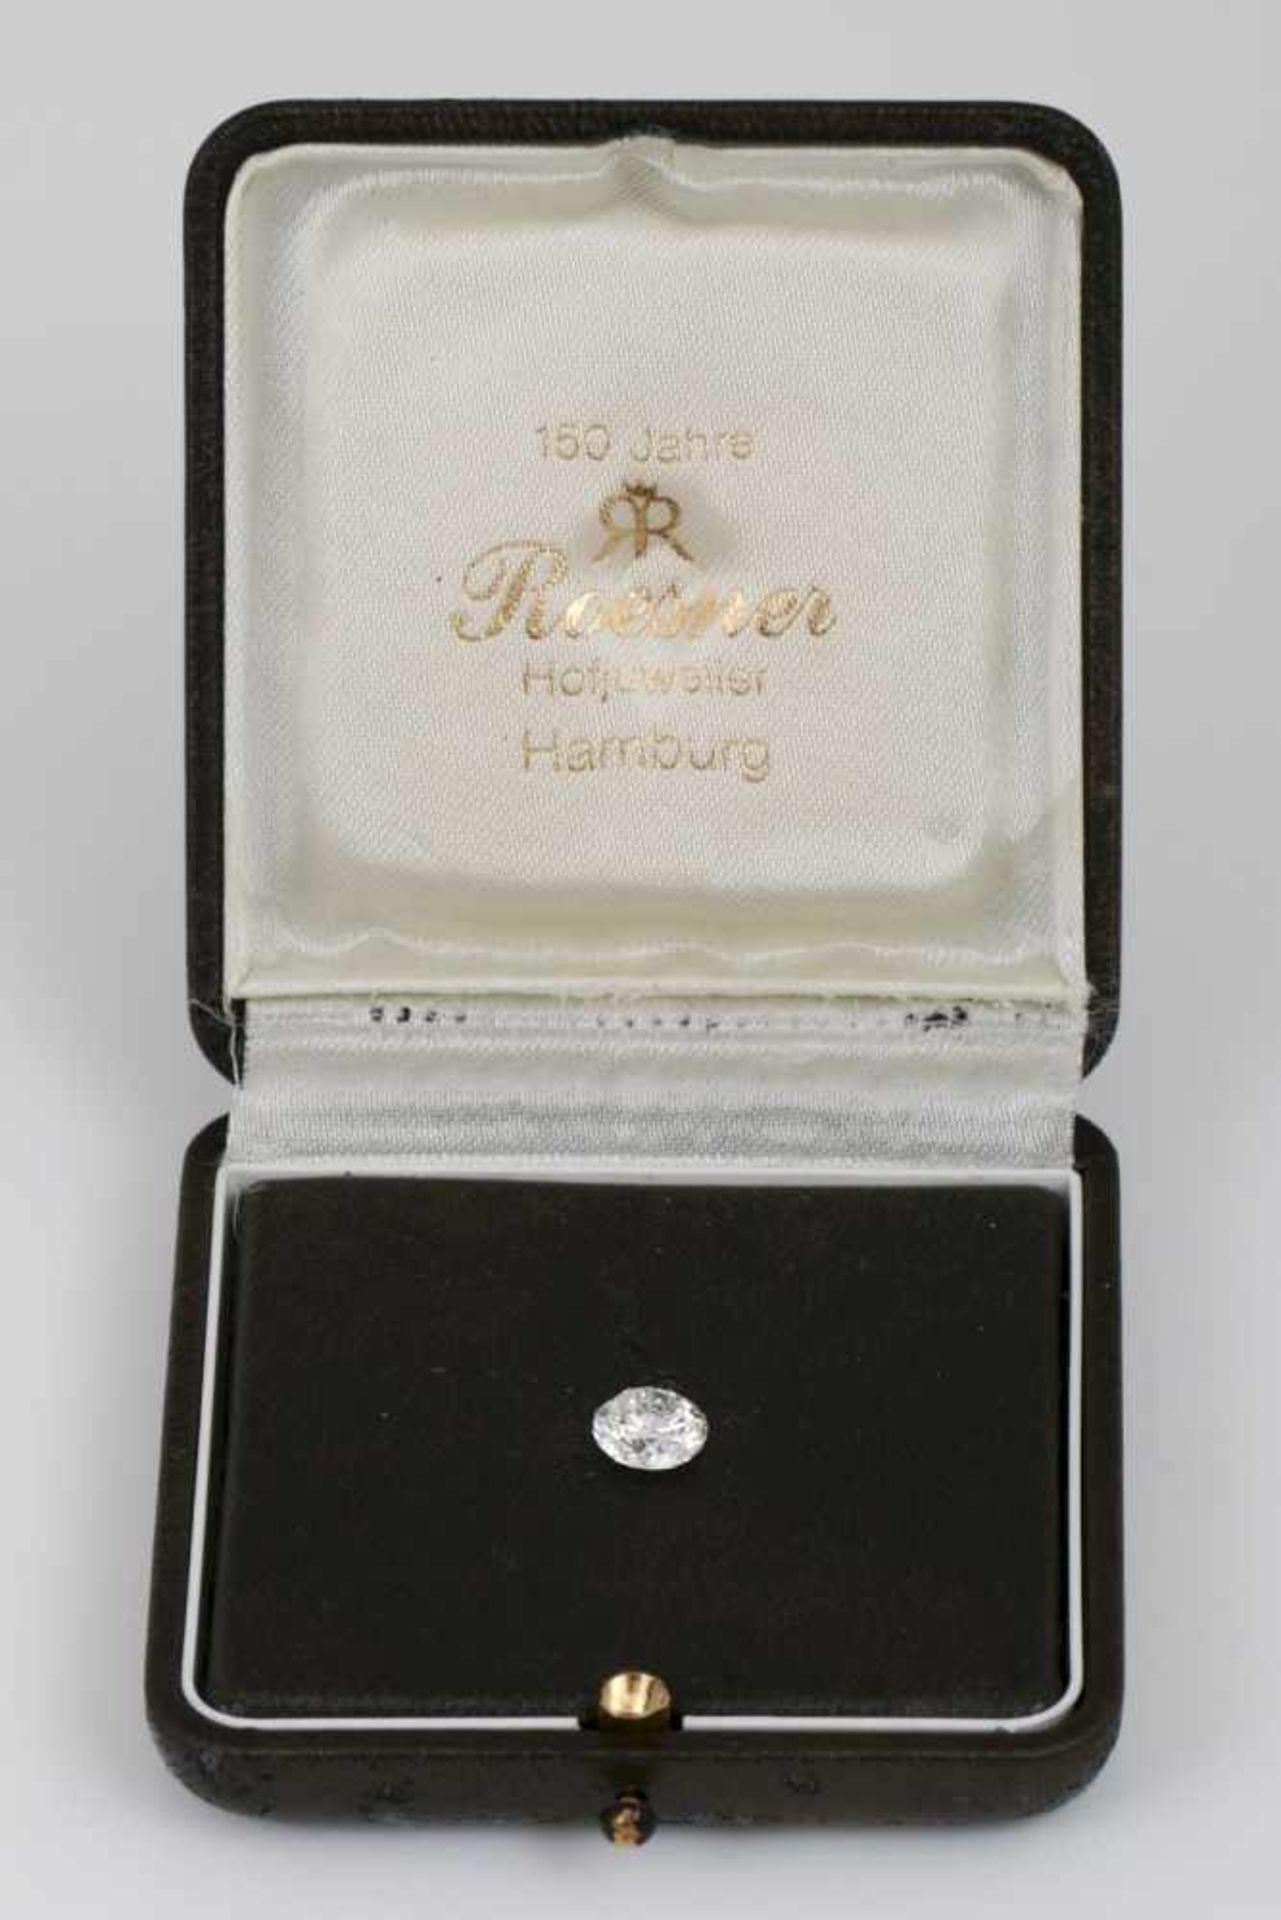 Loser Diamant im BrillantschliffGewicht 2,01ct., Maße 7,93 x 7,87 x 4,98mm, Piqué 1, Feines Weiß,